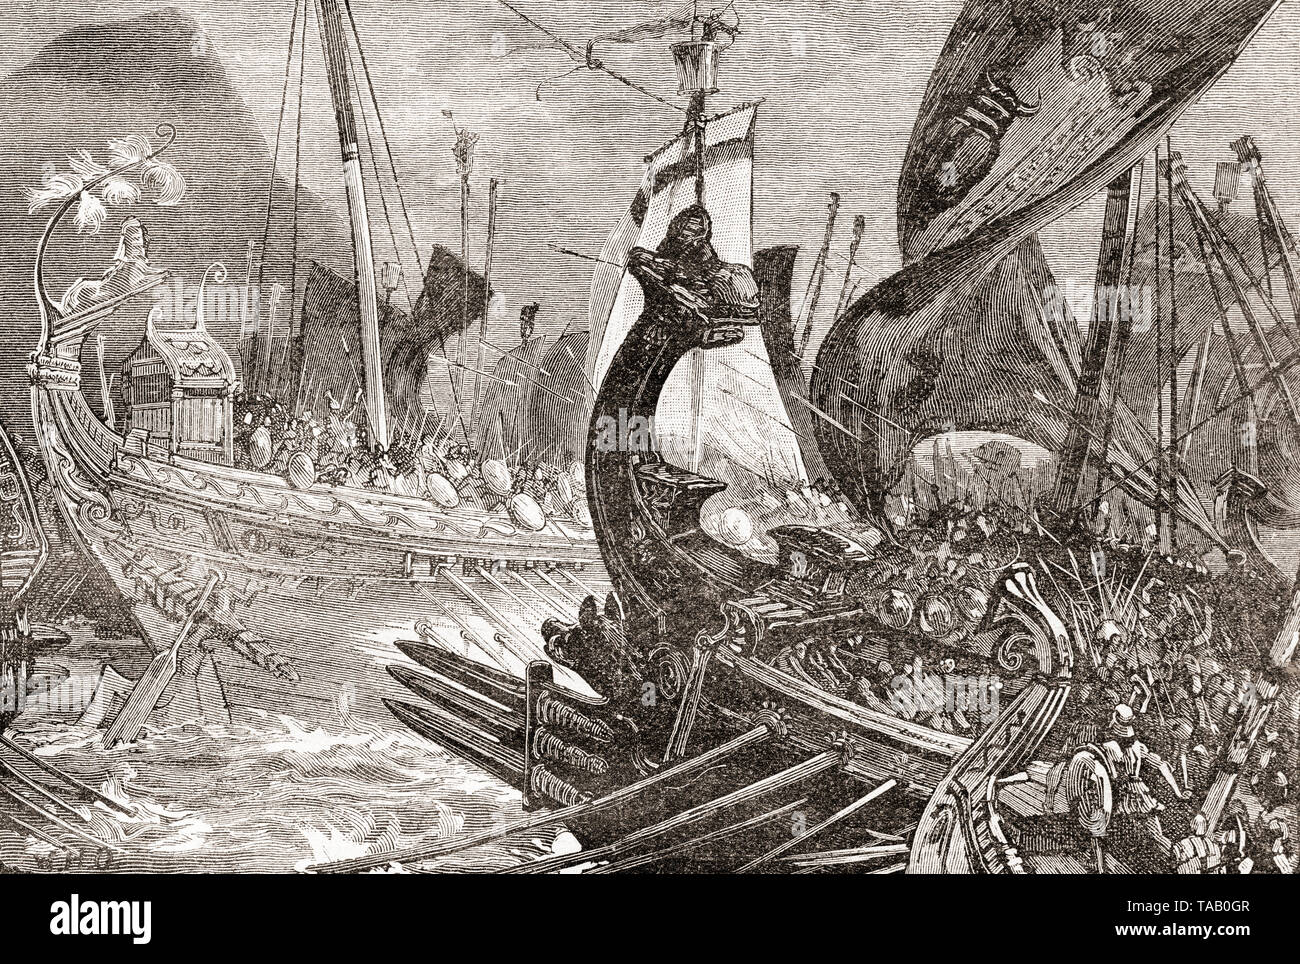 La bataille de Salamine, 480 BC. De la Ilustracion Iberica, publié en 1884. Banque D'Images